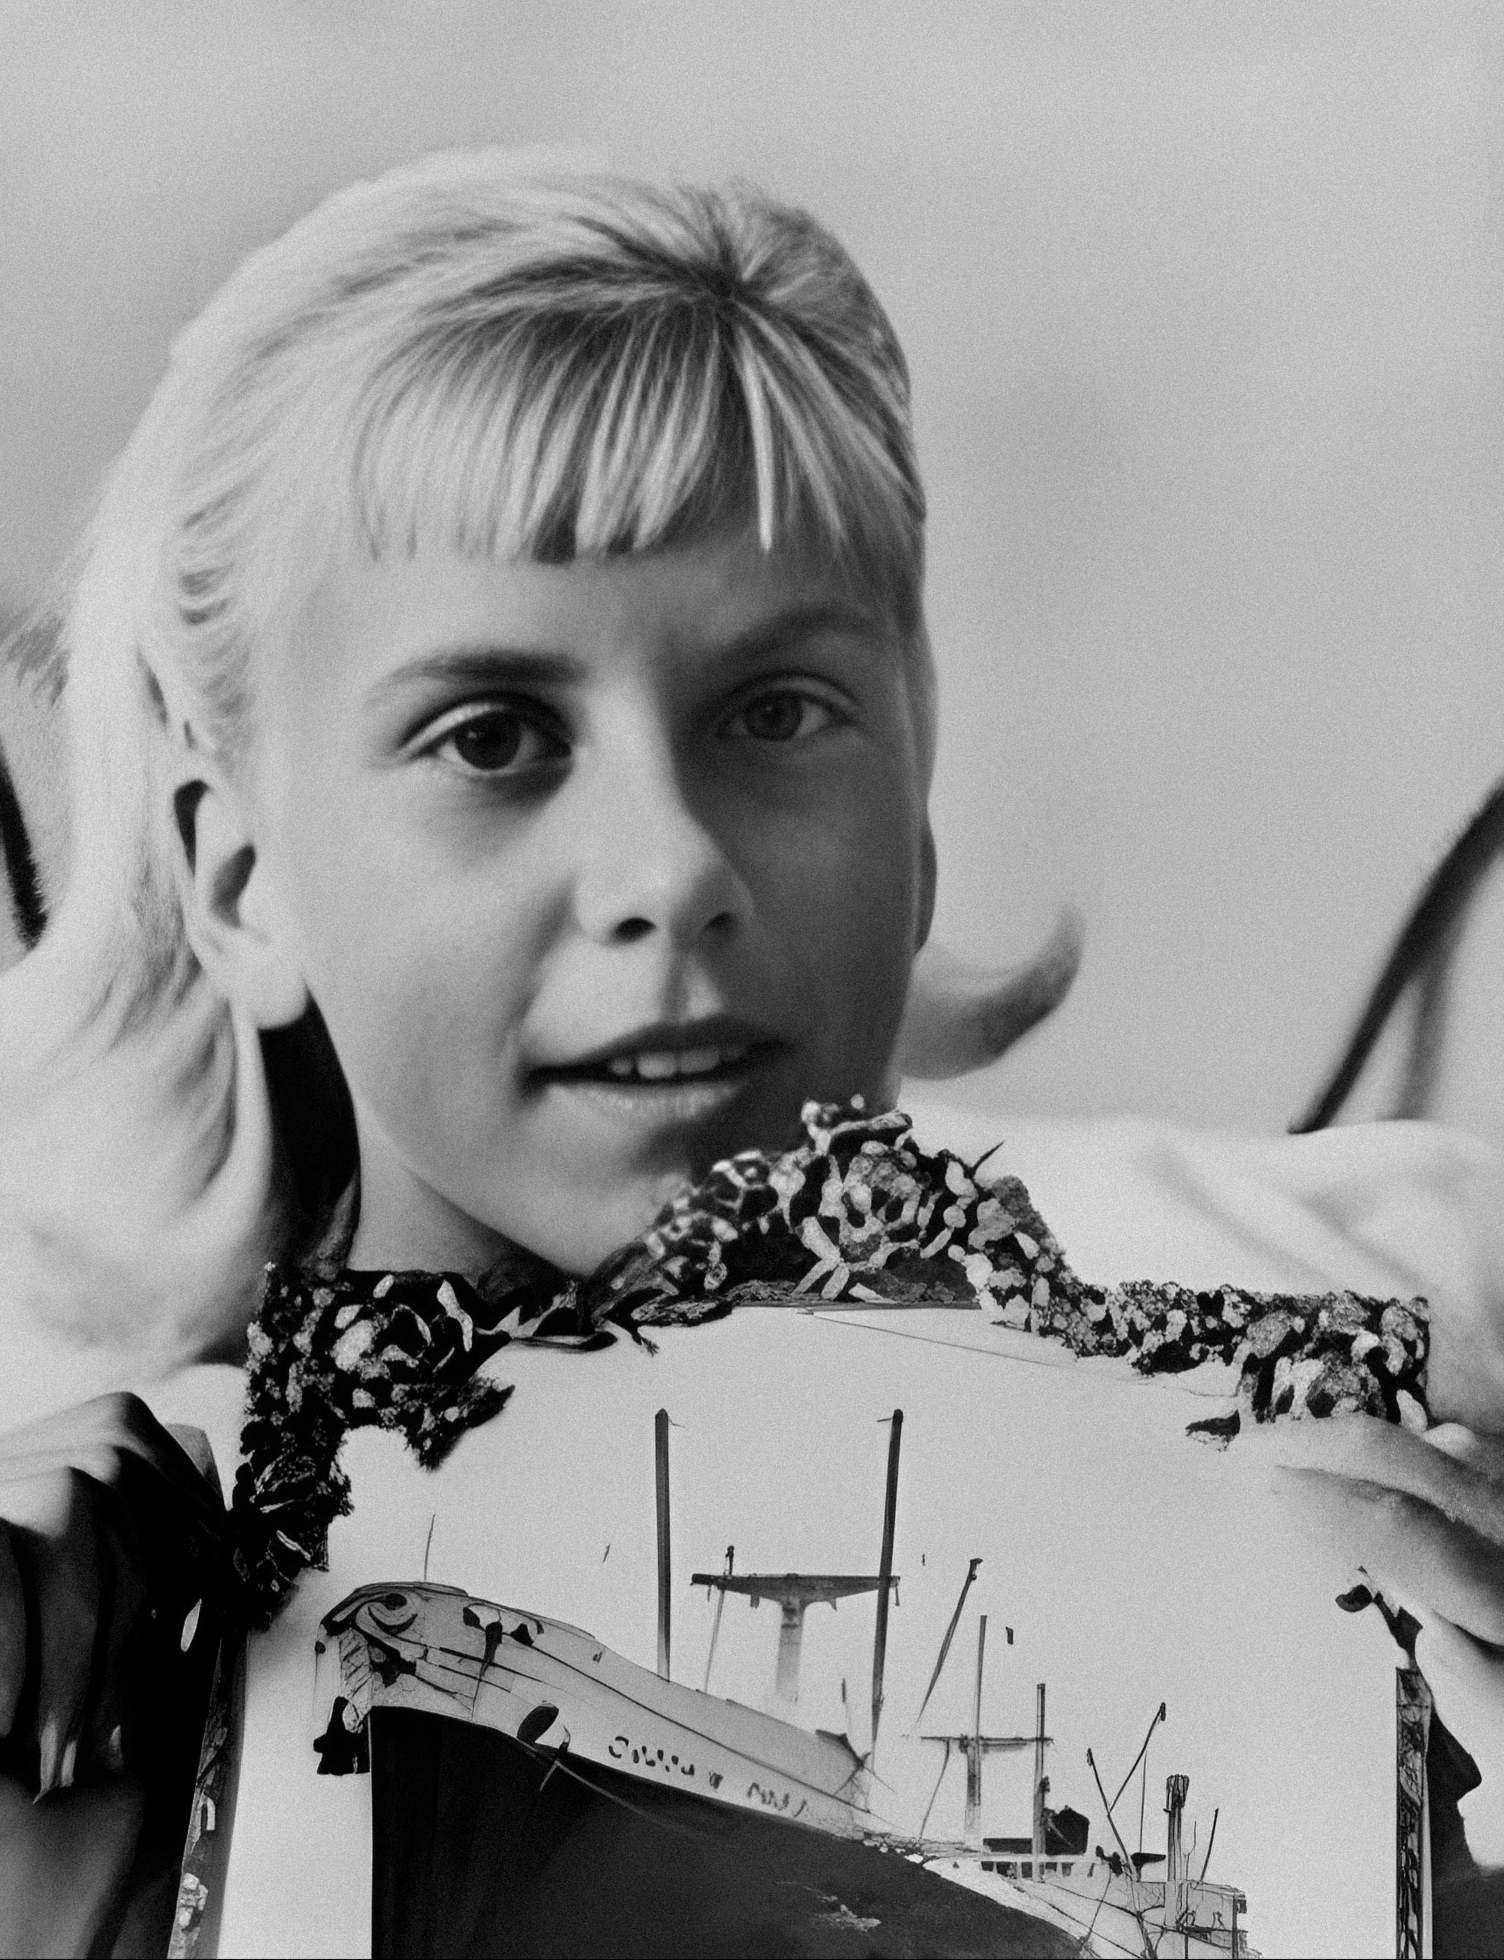 טרי ג'ו דופרו, כפי שצולם מתאושש בבית החולים אוחז בתצלום של קפטן תיאו, ספינת ההצלה שלה. זה צולם במהדורת יום חמישי, 23 בנובמבר 1961 של ניו יורק דיילי ניוז. Wikimedia Commons / שוחזר על ידי MRU.INK